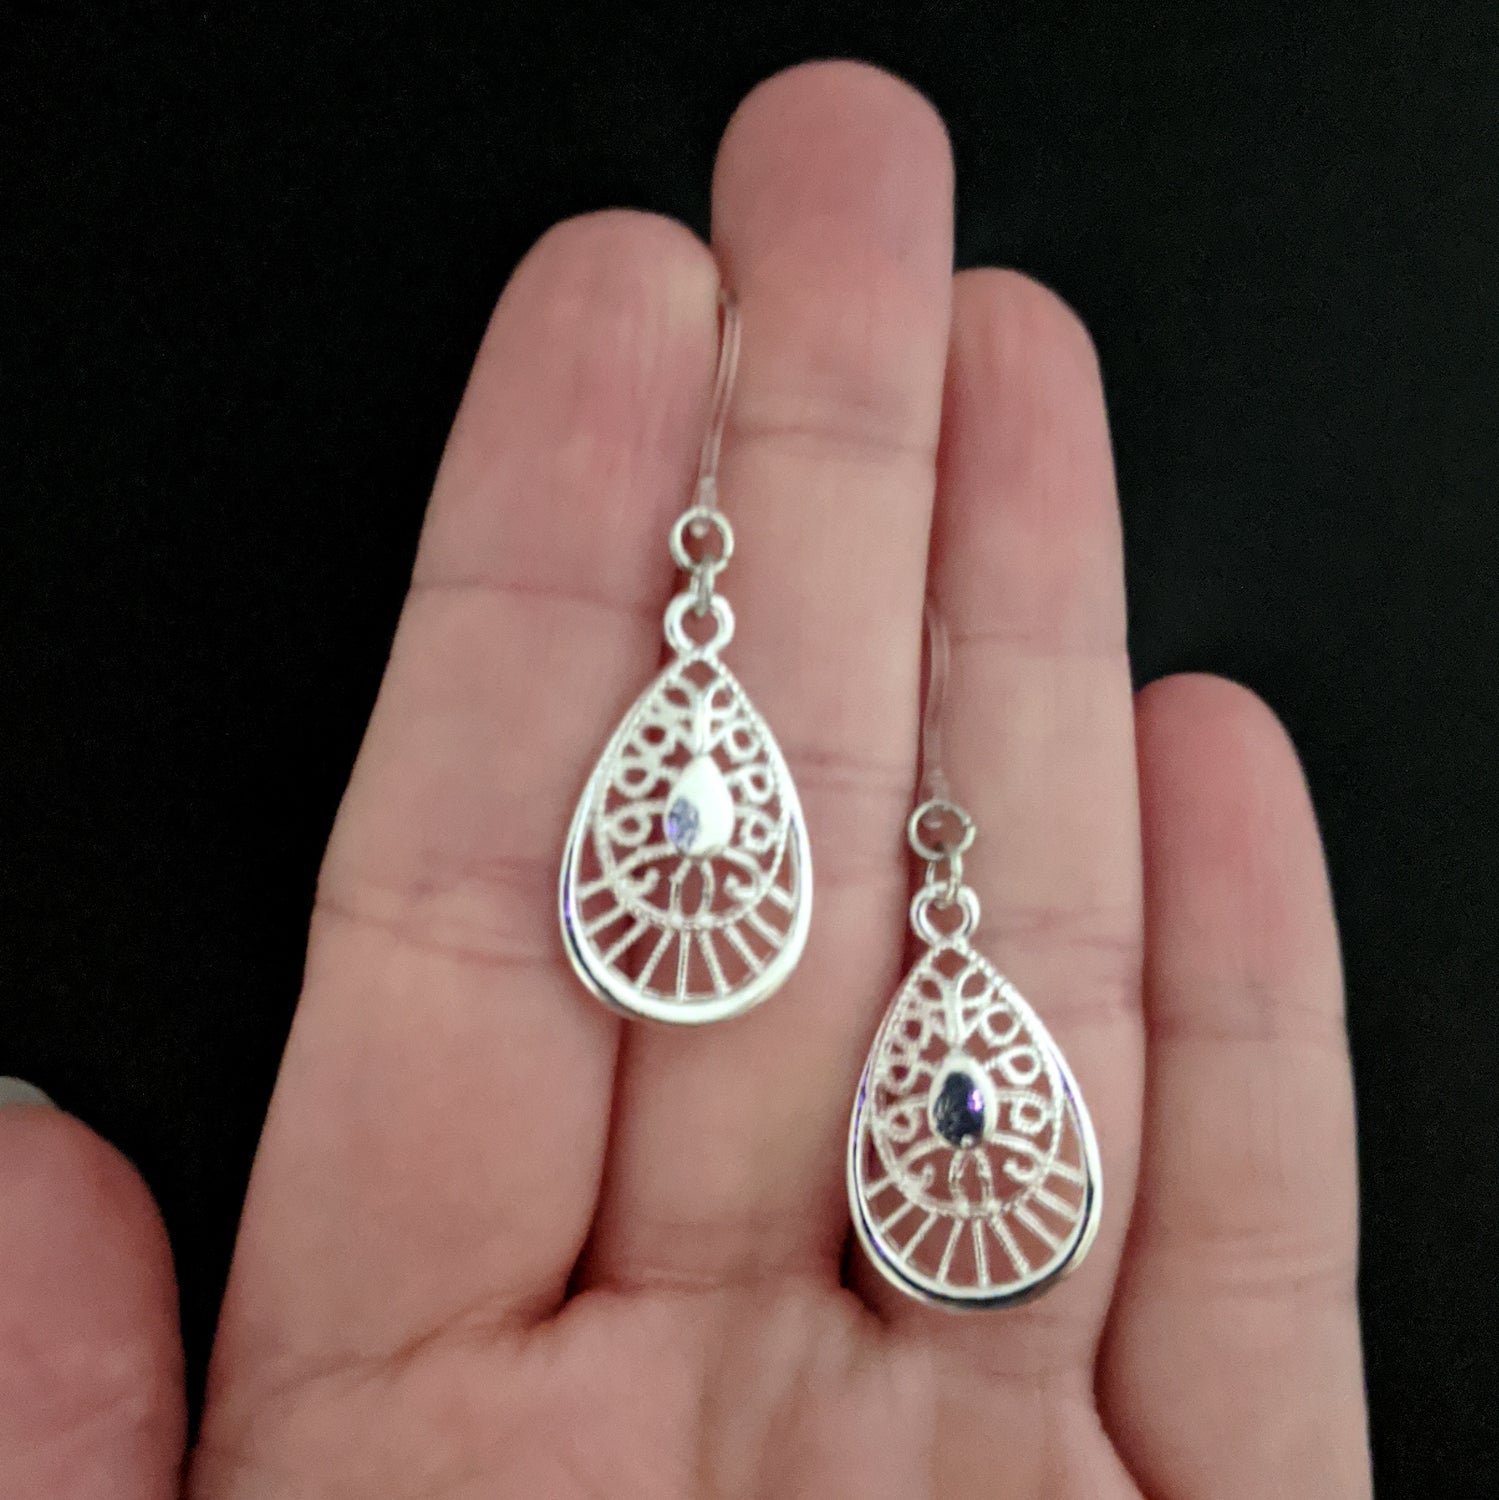 Silver Decorative Teardrop Earrings (Dangles) - size comparison hand